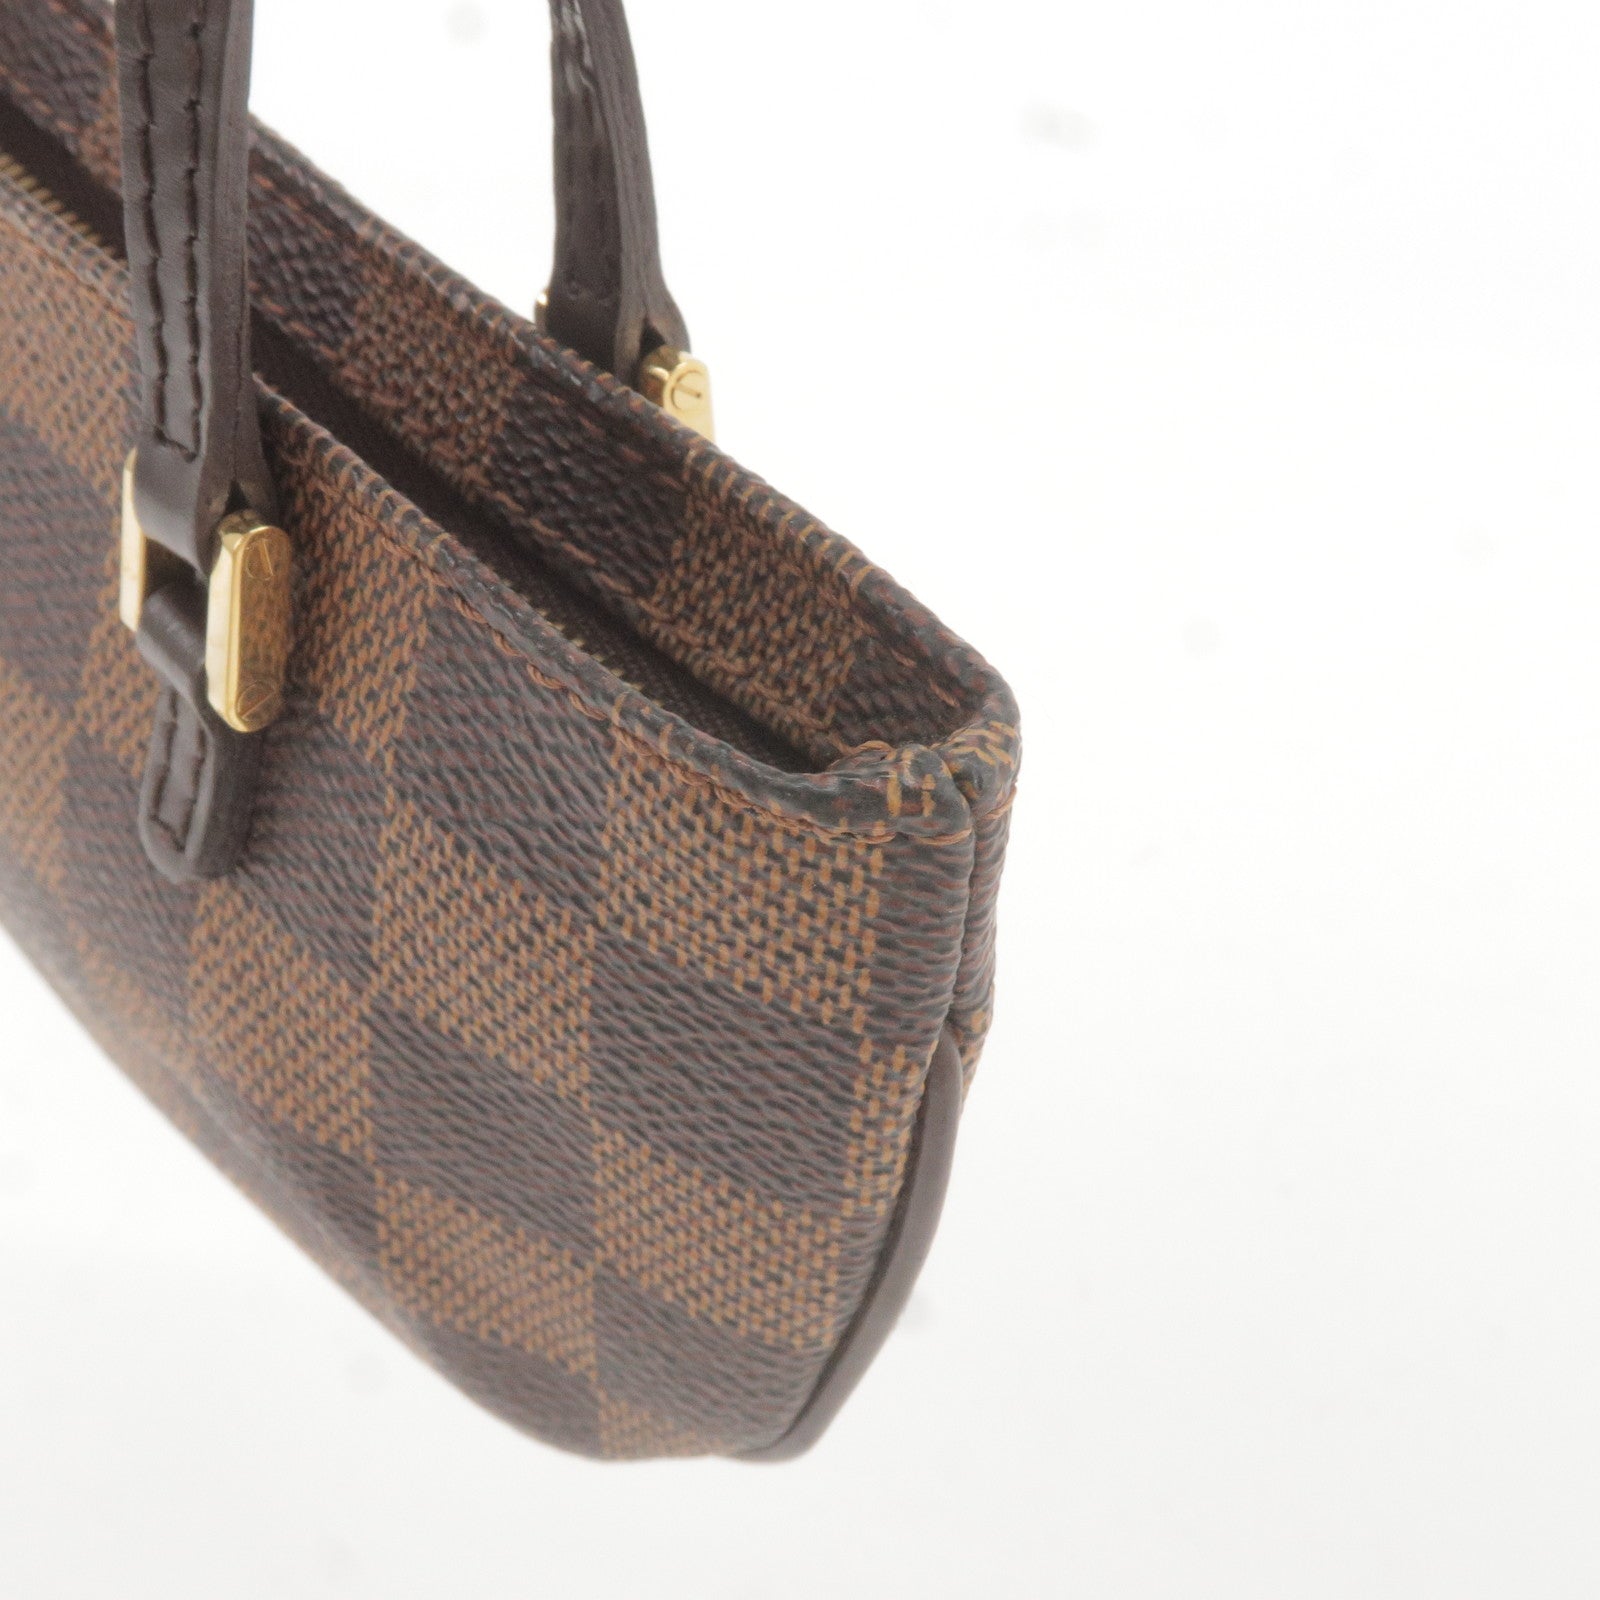 Bags, Louis Vuitton Manosque Gm In Good Condition